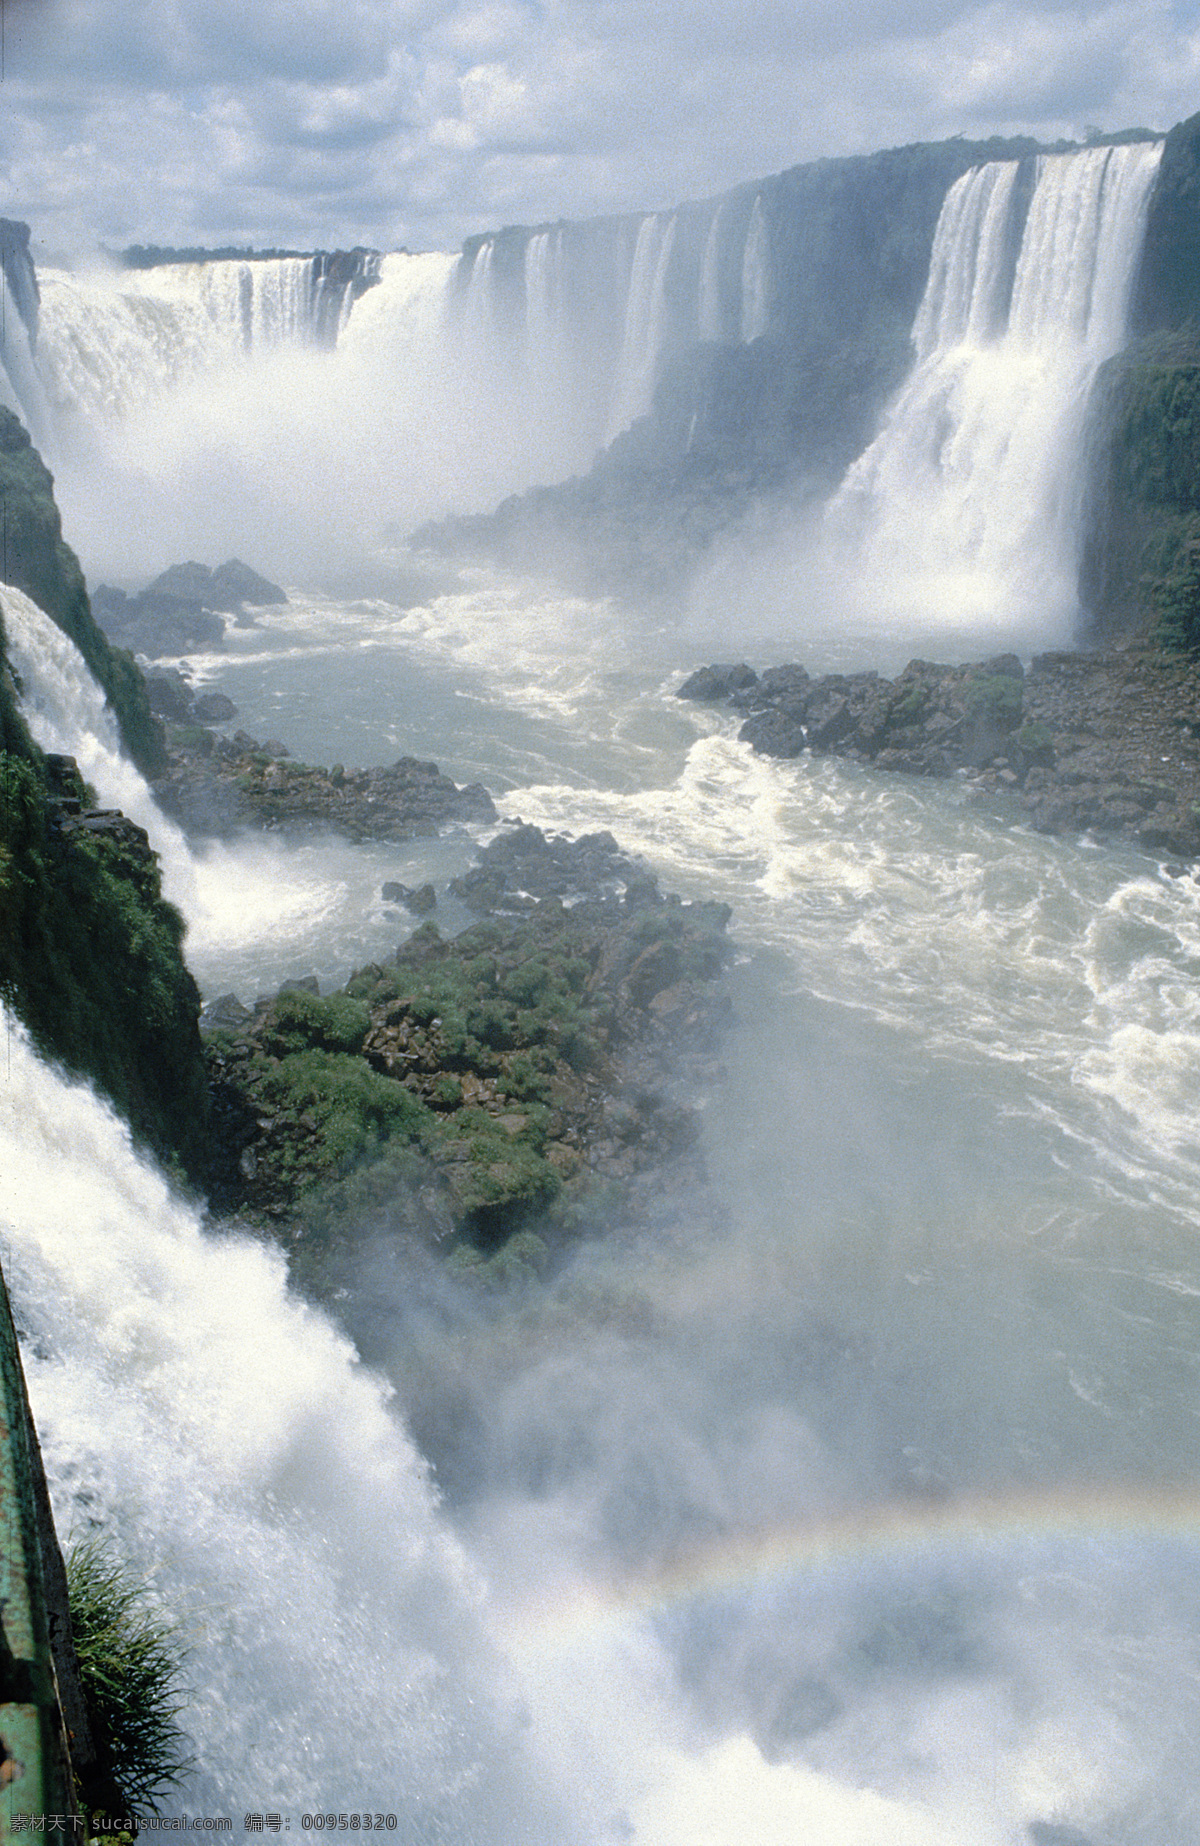 伊瓜苏大瀑布 伊瓜苏瀑布 伊瓜苏 瀑布 阿根廷 巴西 巴拉那河 河流 南美洲 森林 国家公园 世界自然遗产 自然风景 自然景观